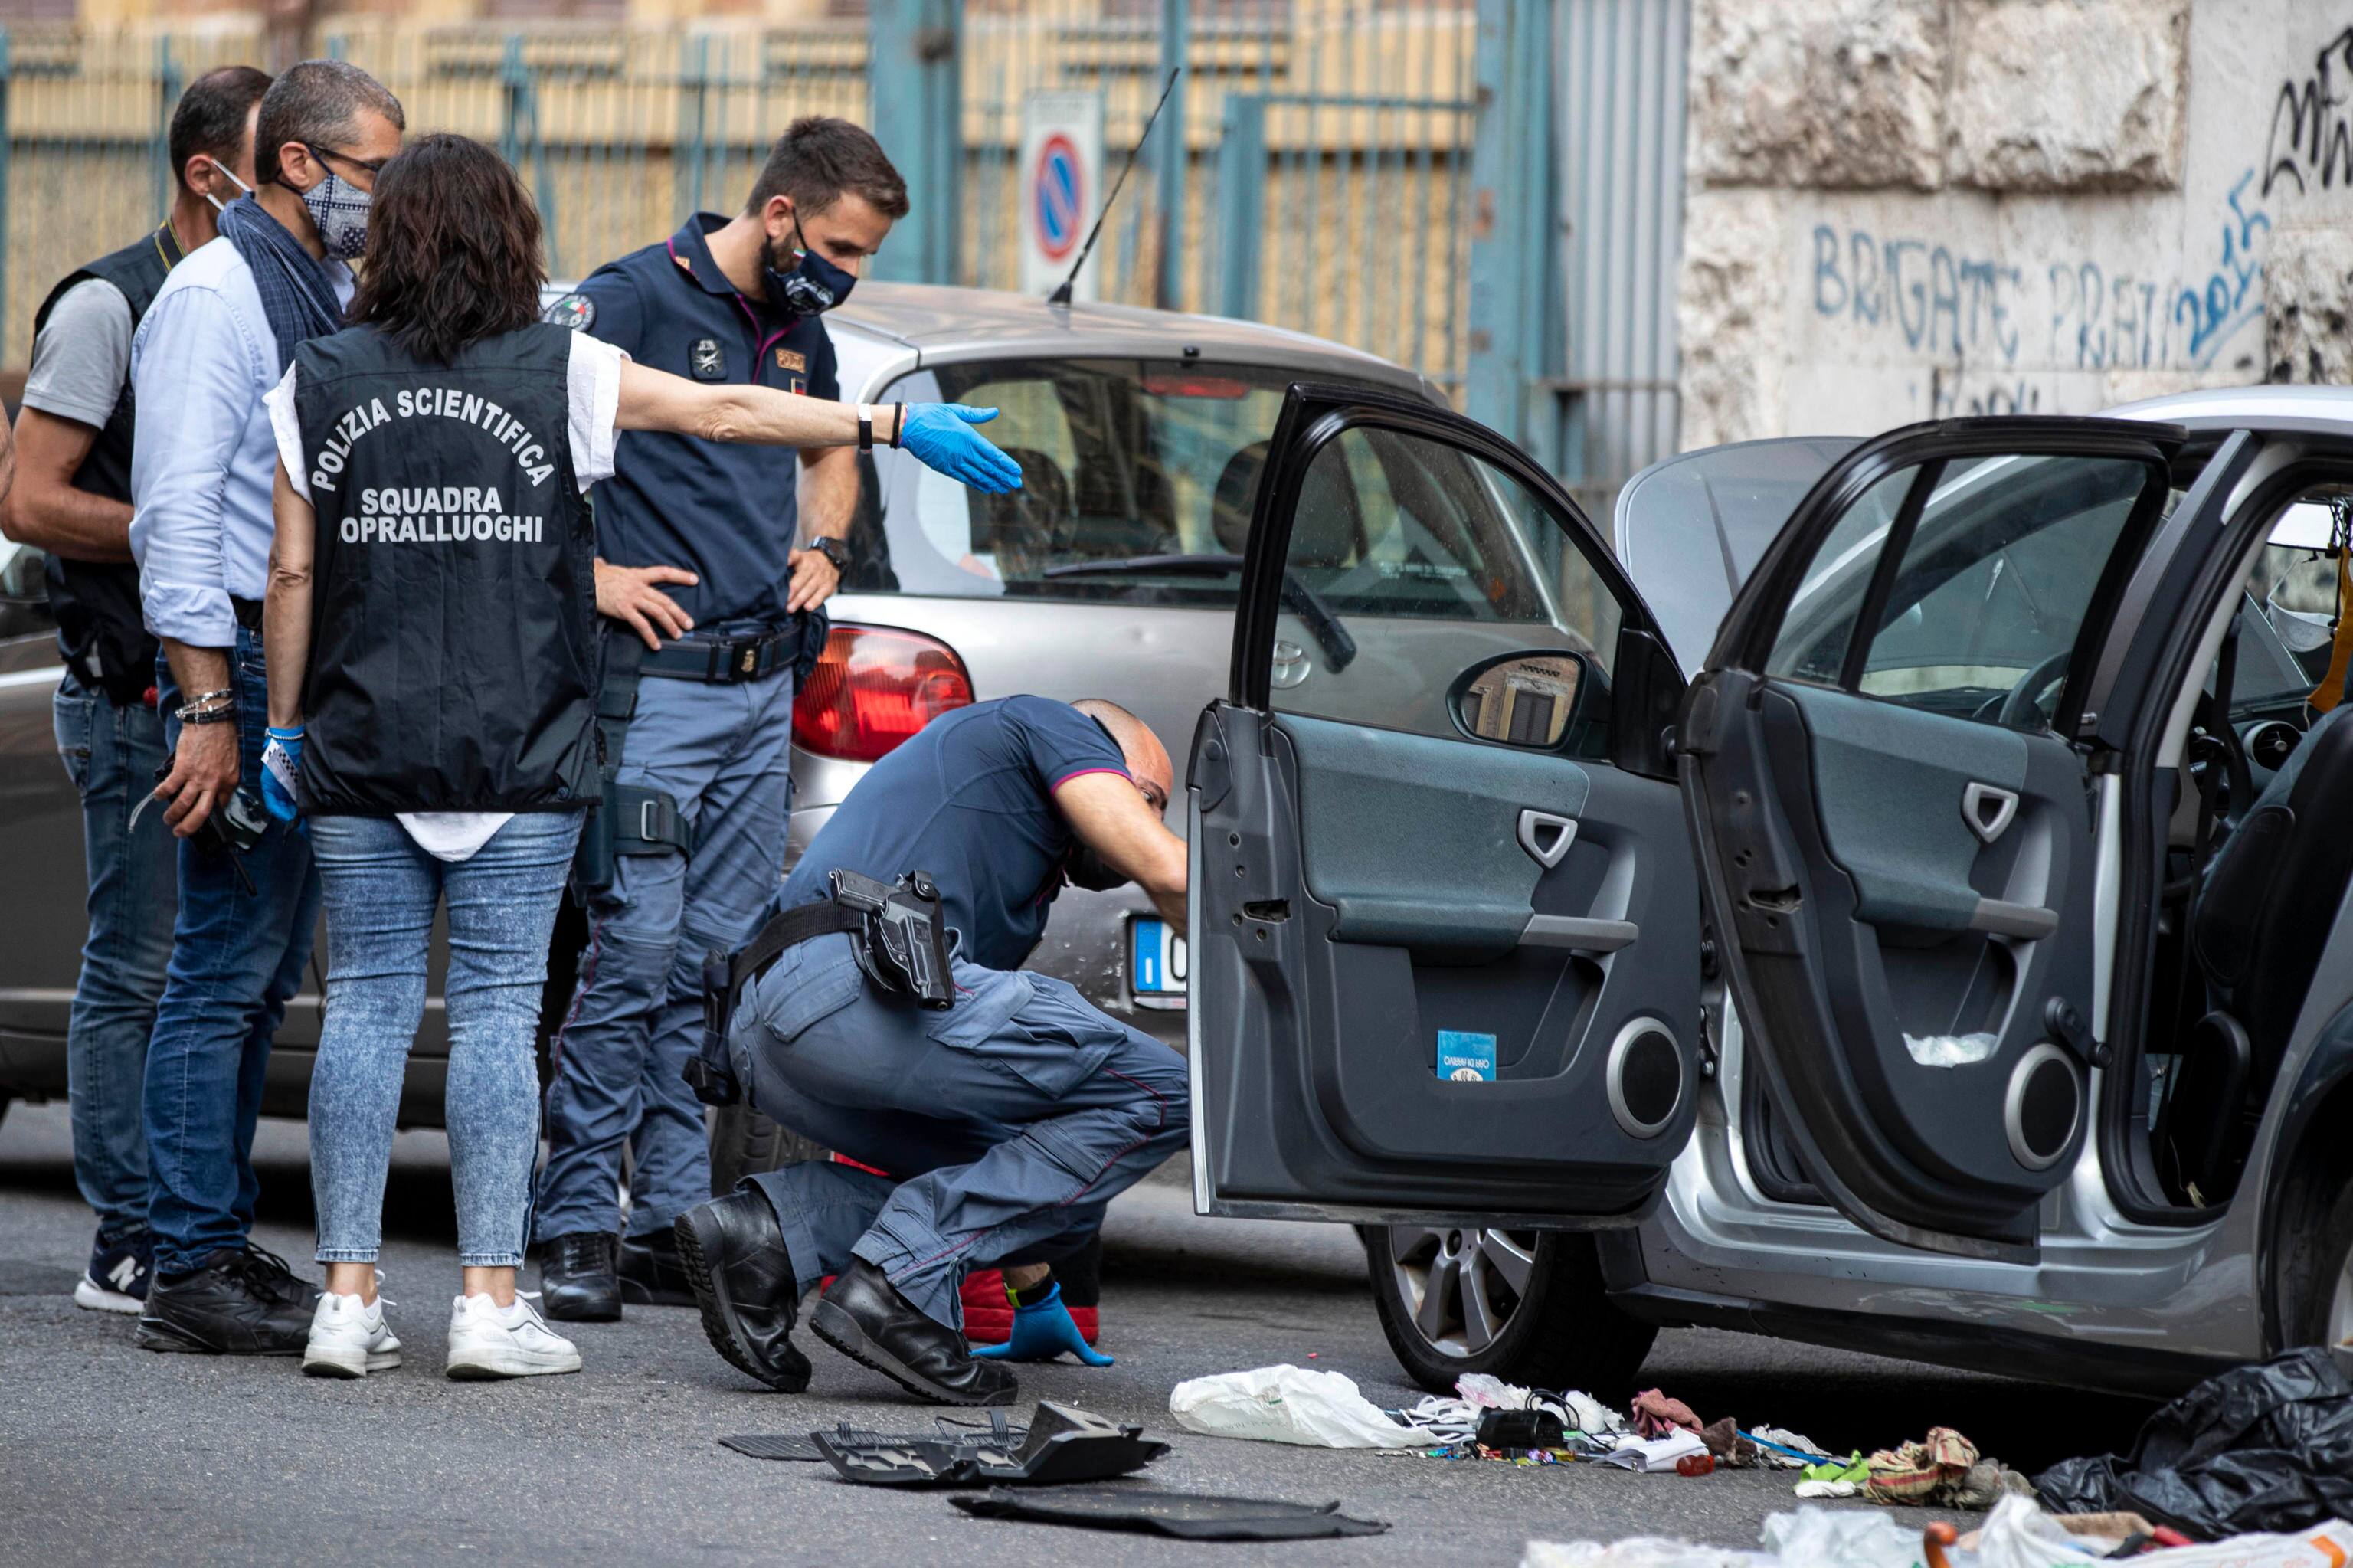 Trovato pacco bomba su un'autovettura in via Tito Speri nel quartiere Prati, polizia scientifica sul posto. Roma 15 giugno 2021
ANSA/MASSIMO PERCOSSI